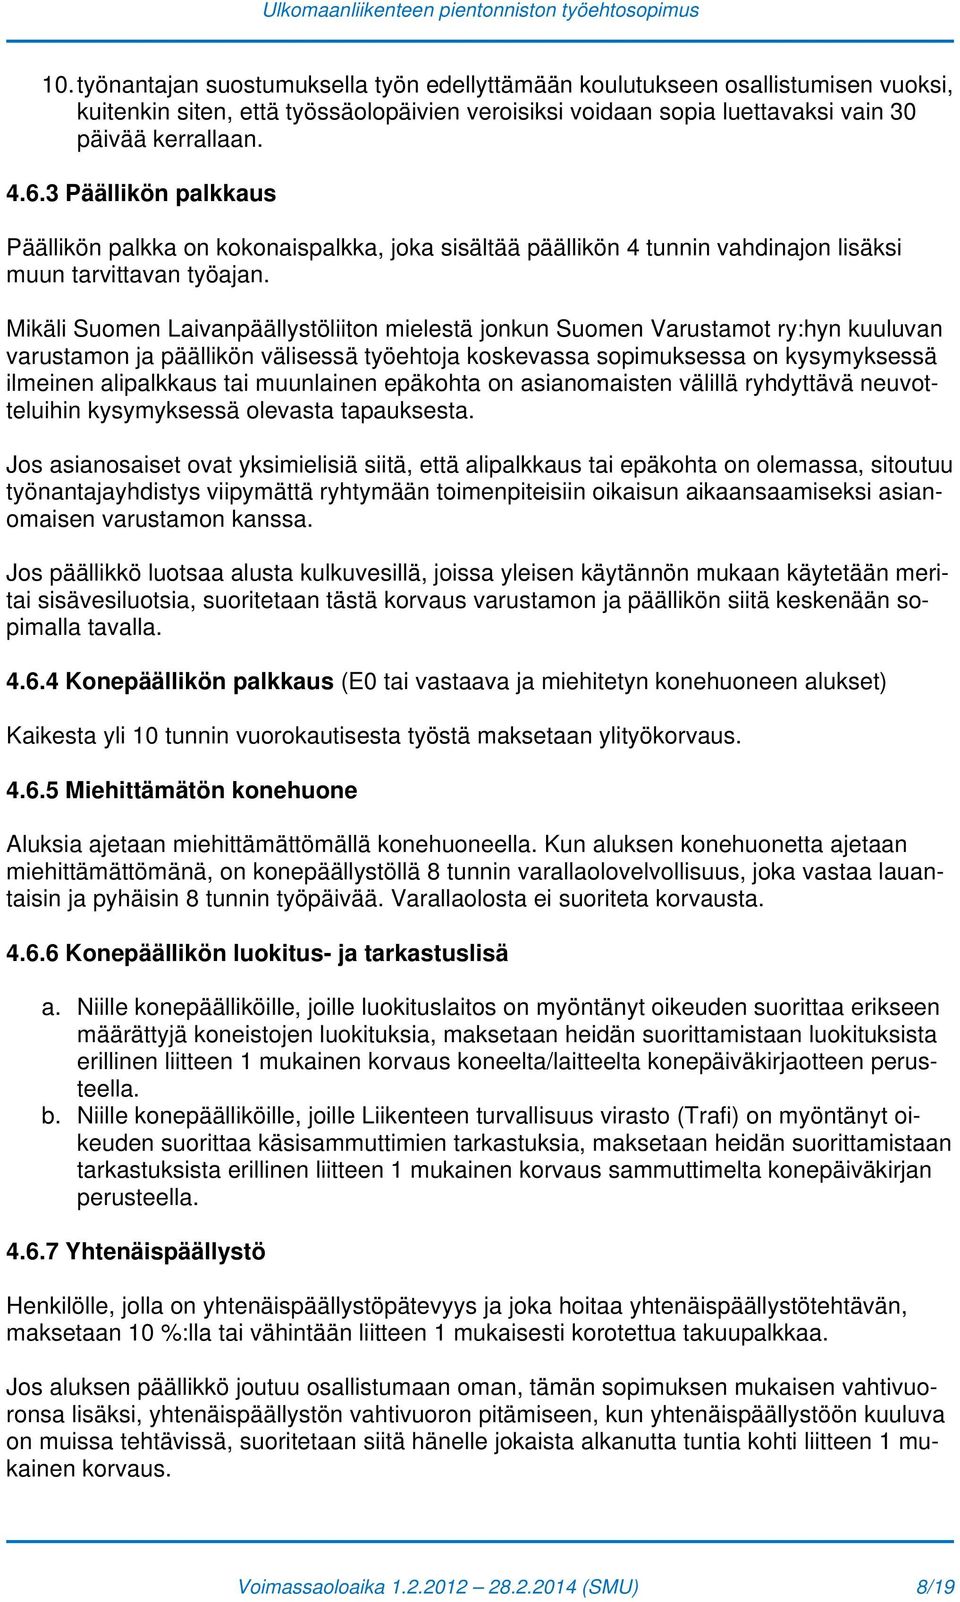 Mikäli Suomen Laivanpäällystöliiton mielestä jonkun Suomen Varustamot ry:hyn kuuluvan varustamon ja päällikön välisessä työehtoja koskevassa sopimuksessa on kysymyksessä ilmeinen alipalkkaus tai